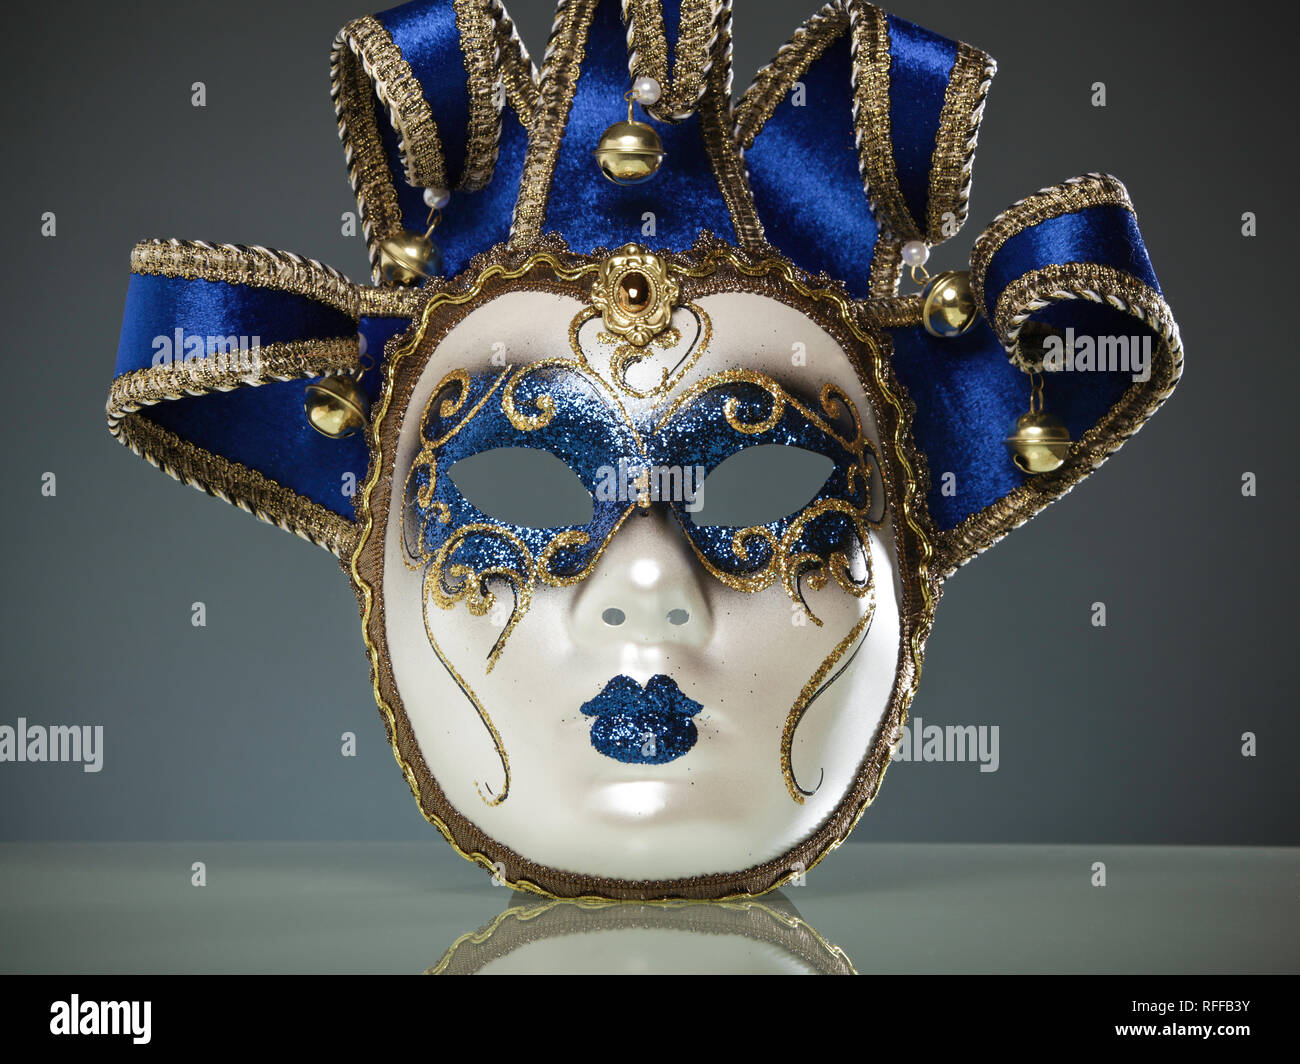 Masque de Venise contre l'arrière-plan dans les tons bleus Banque D'Images